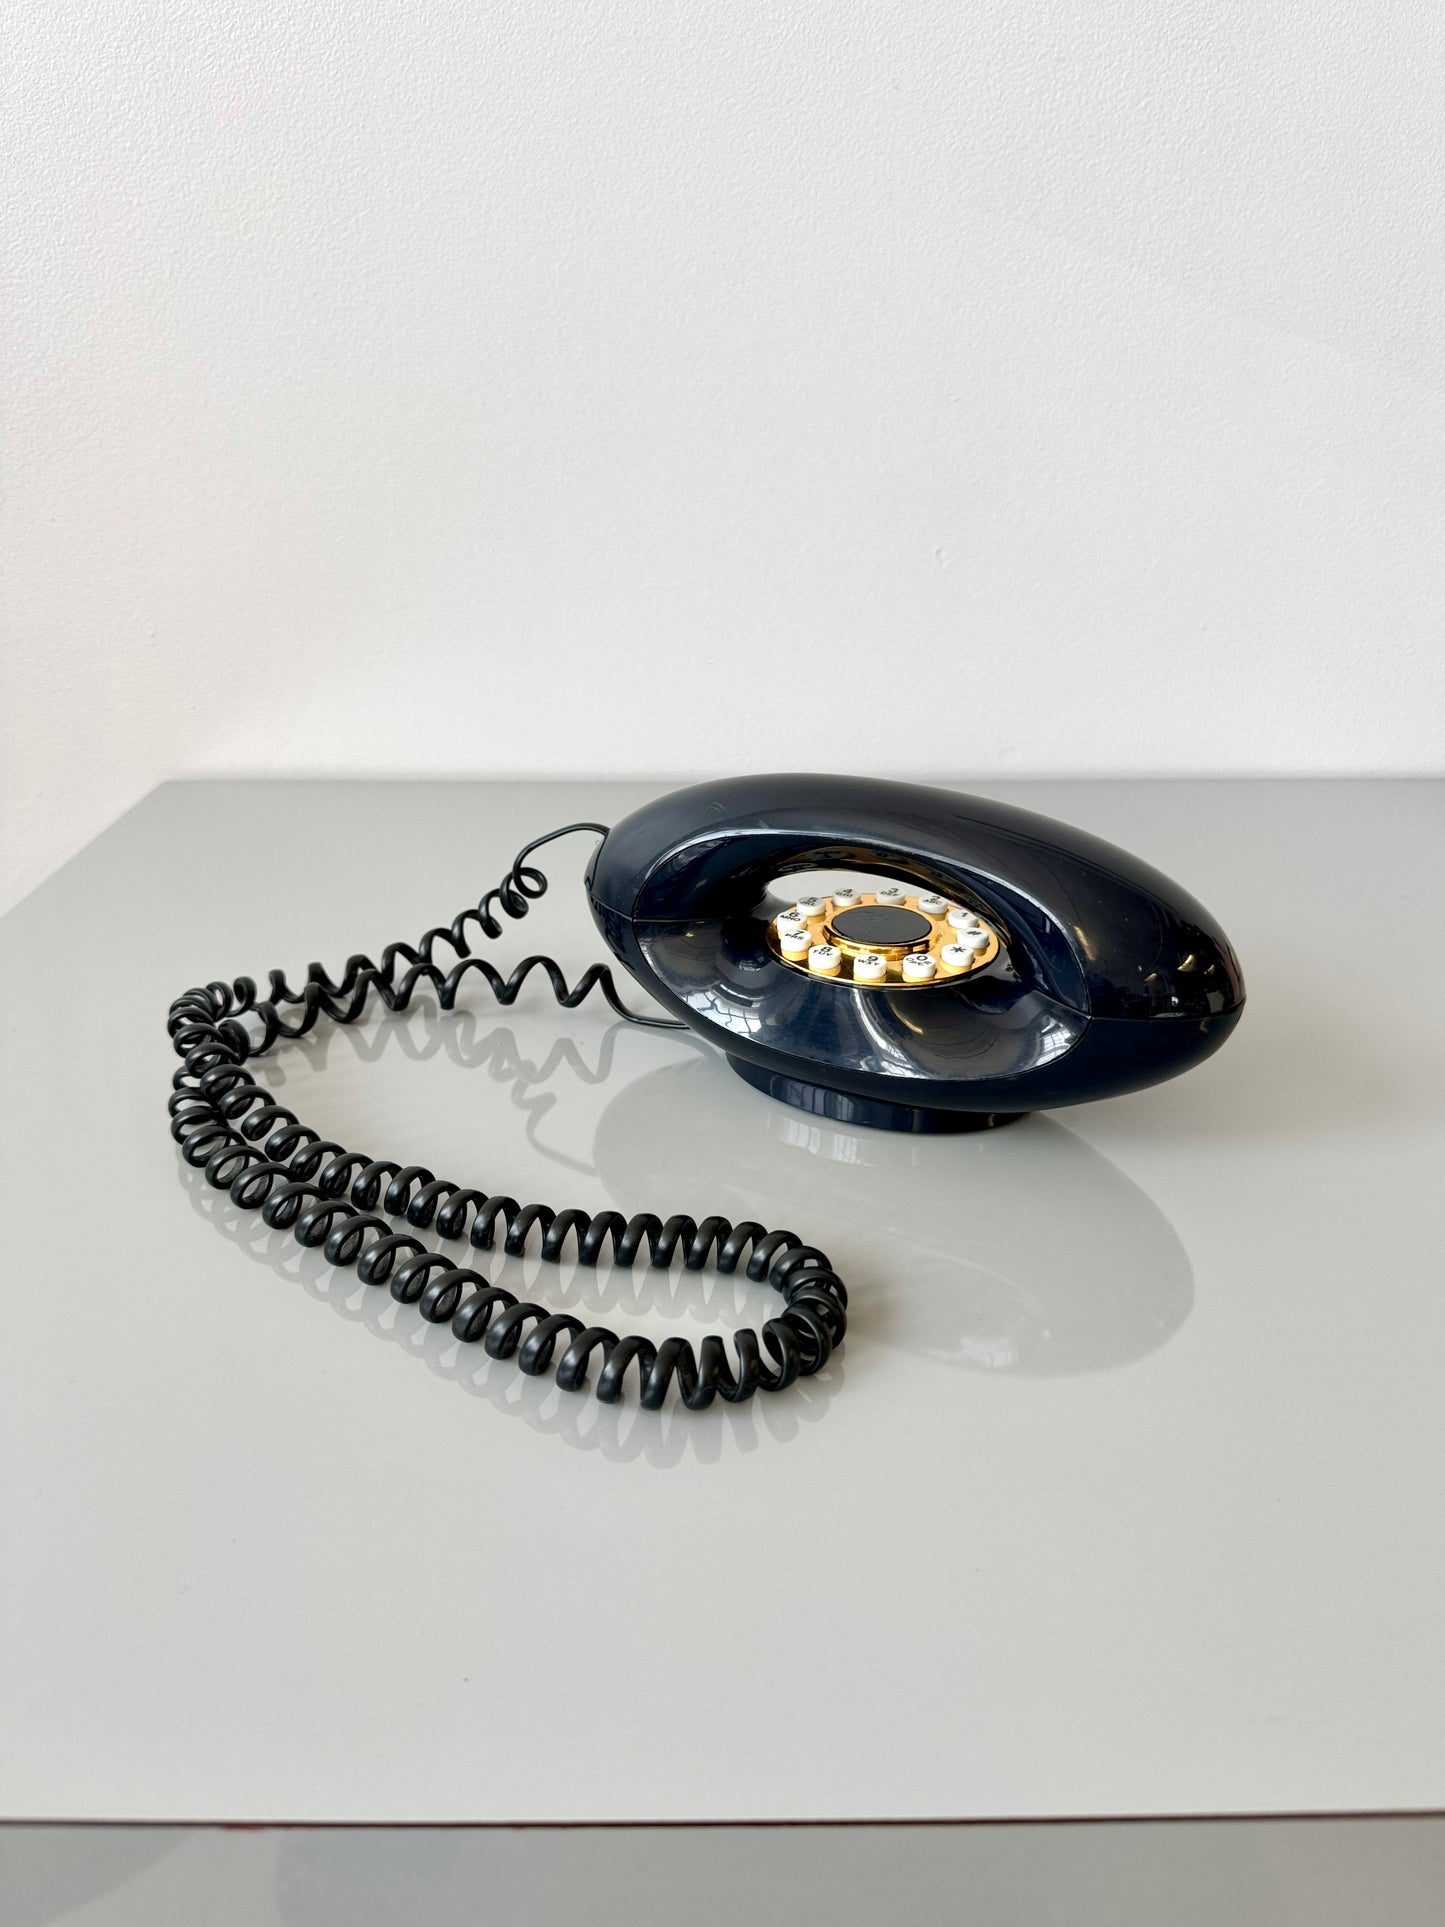 Vintage Push Button "Genie" Landline Phone